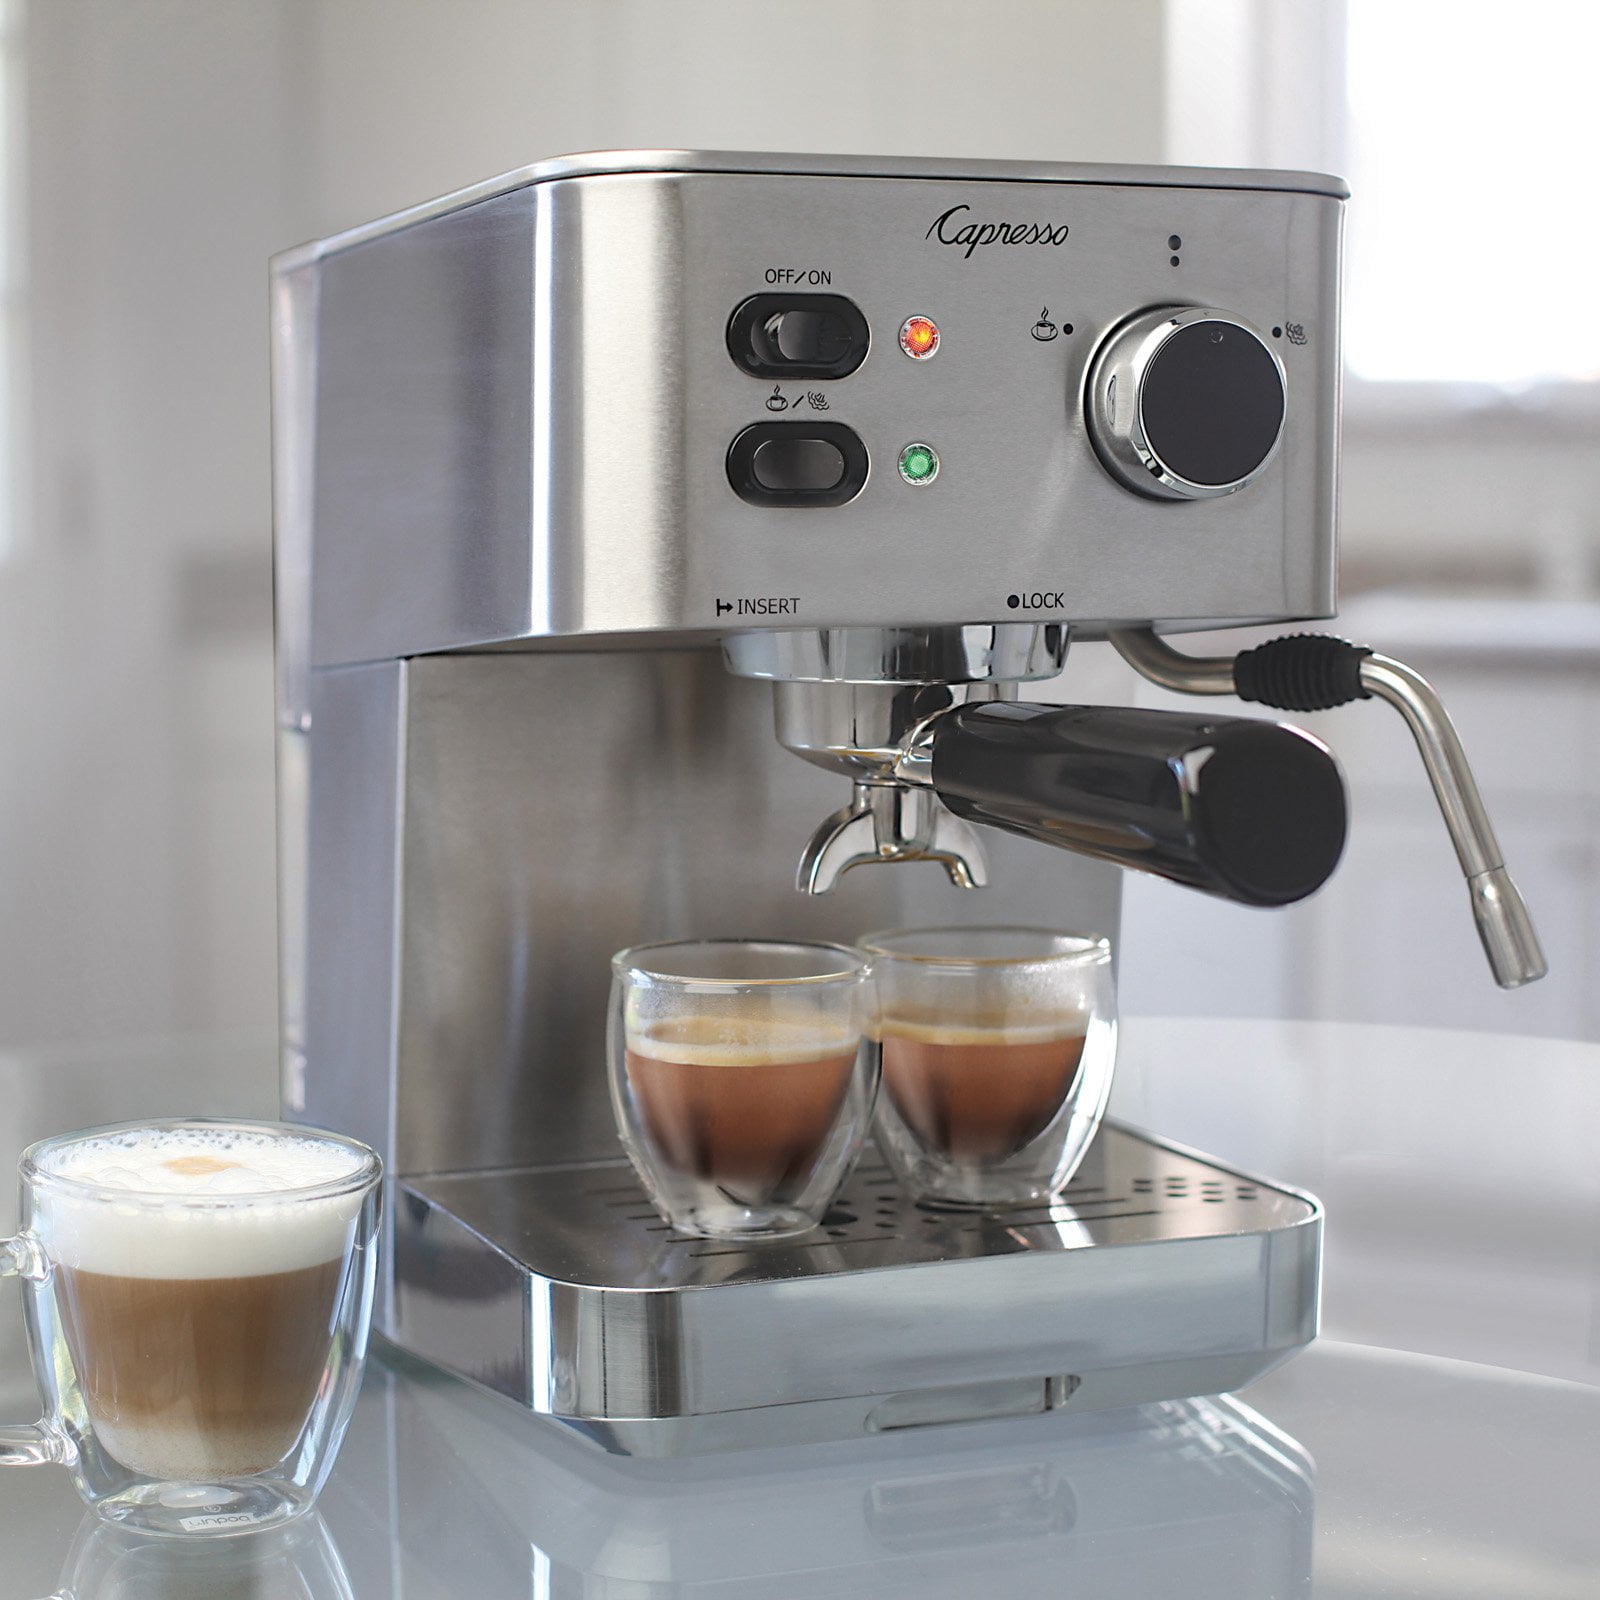 Home espresso maker